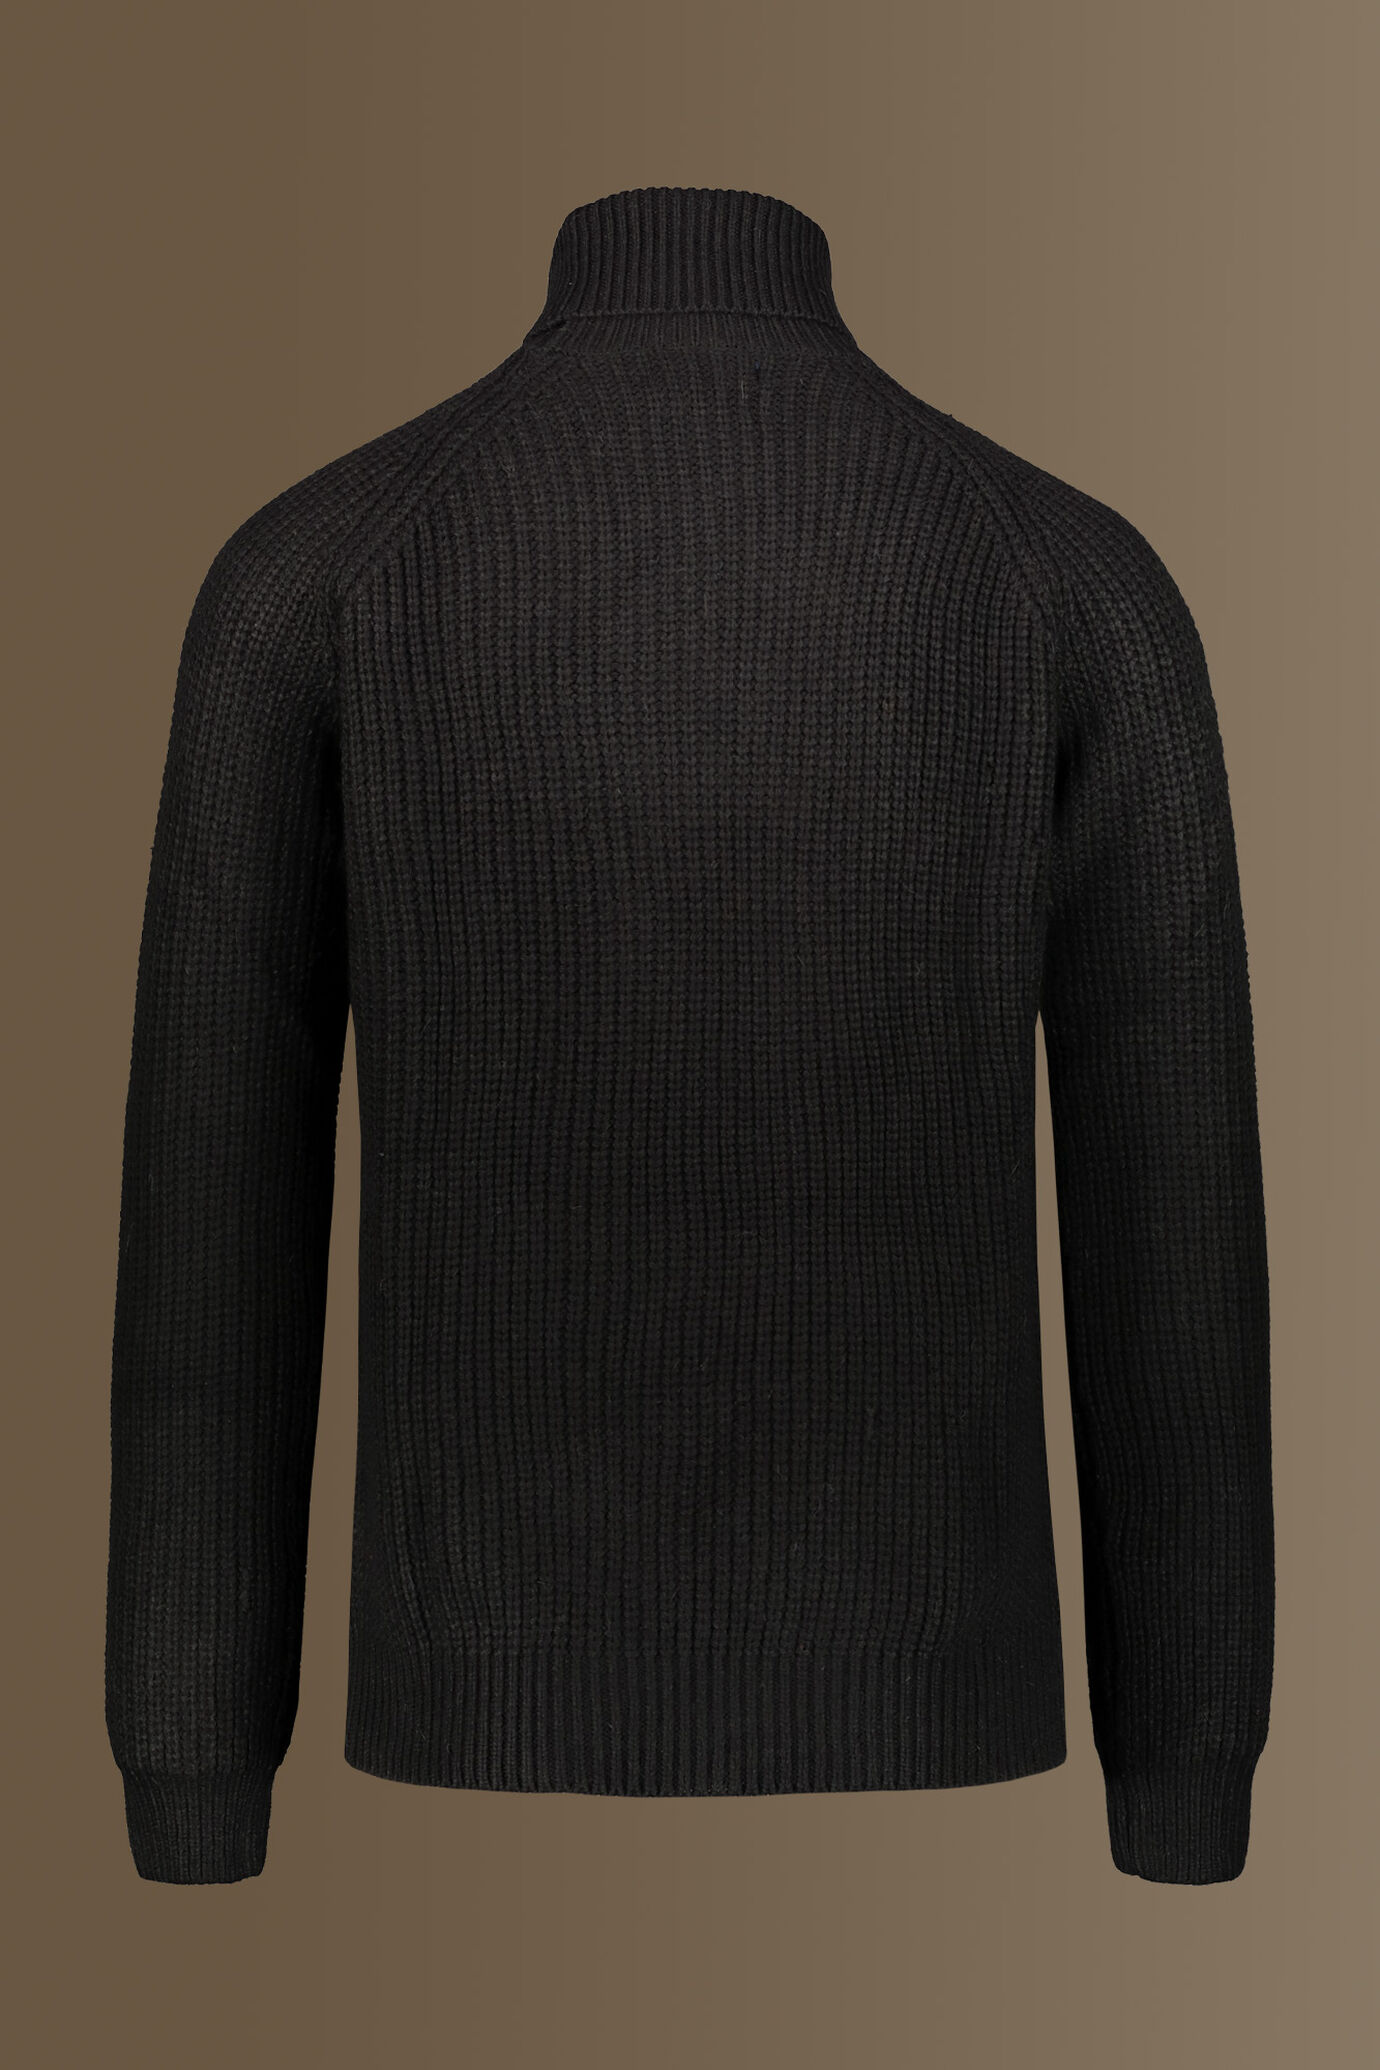 Turtle neck sweater wool blend raglan sleeves image number 1